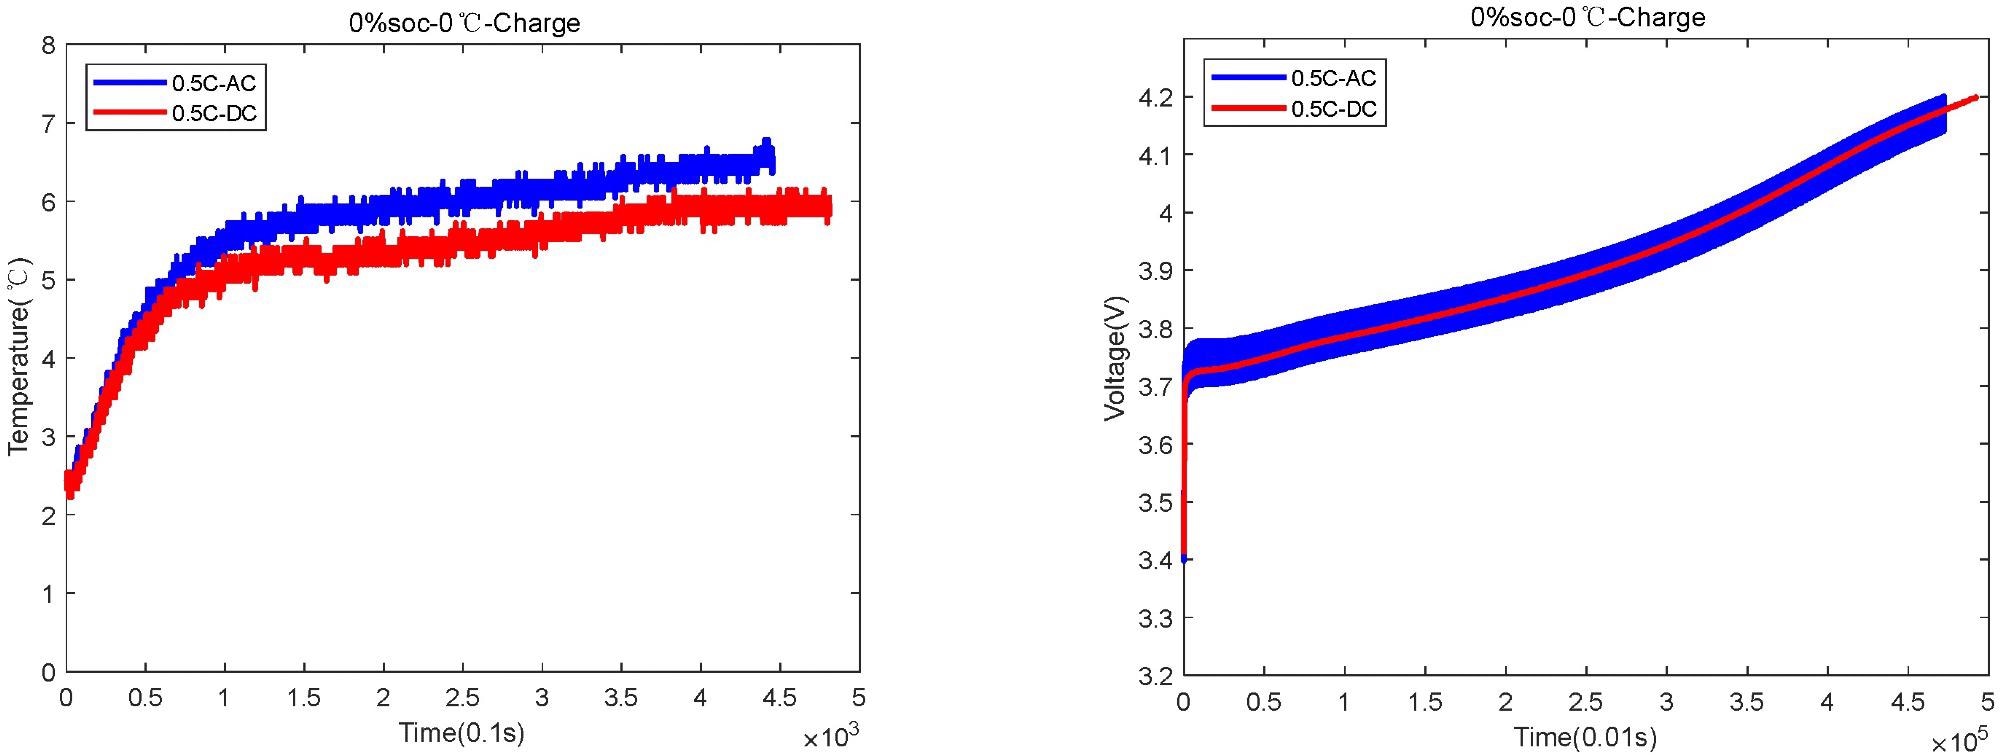 0 °C and 0% SOC temperature and voltage change diagram.